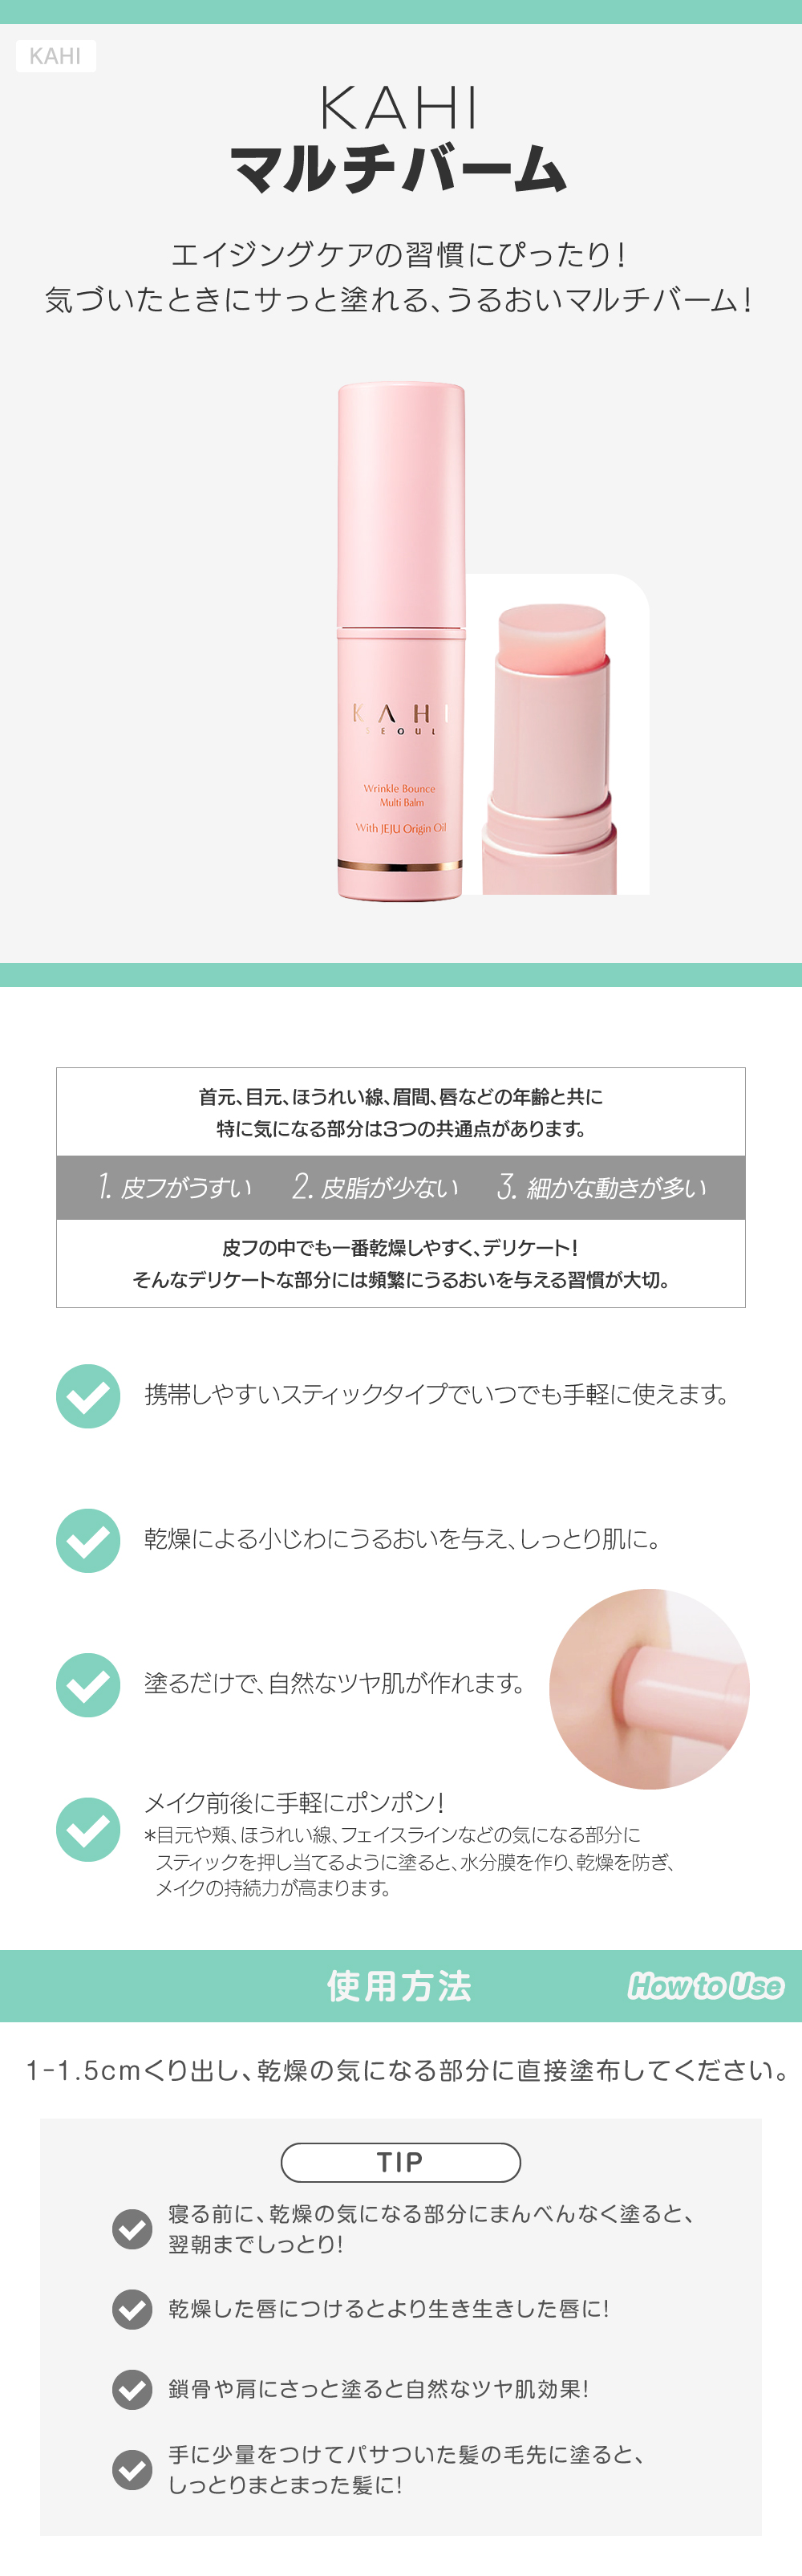 KAHI マルチバーム skin holic 日本公式 オンラインショップ